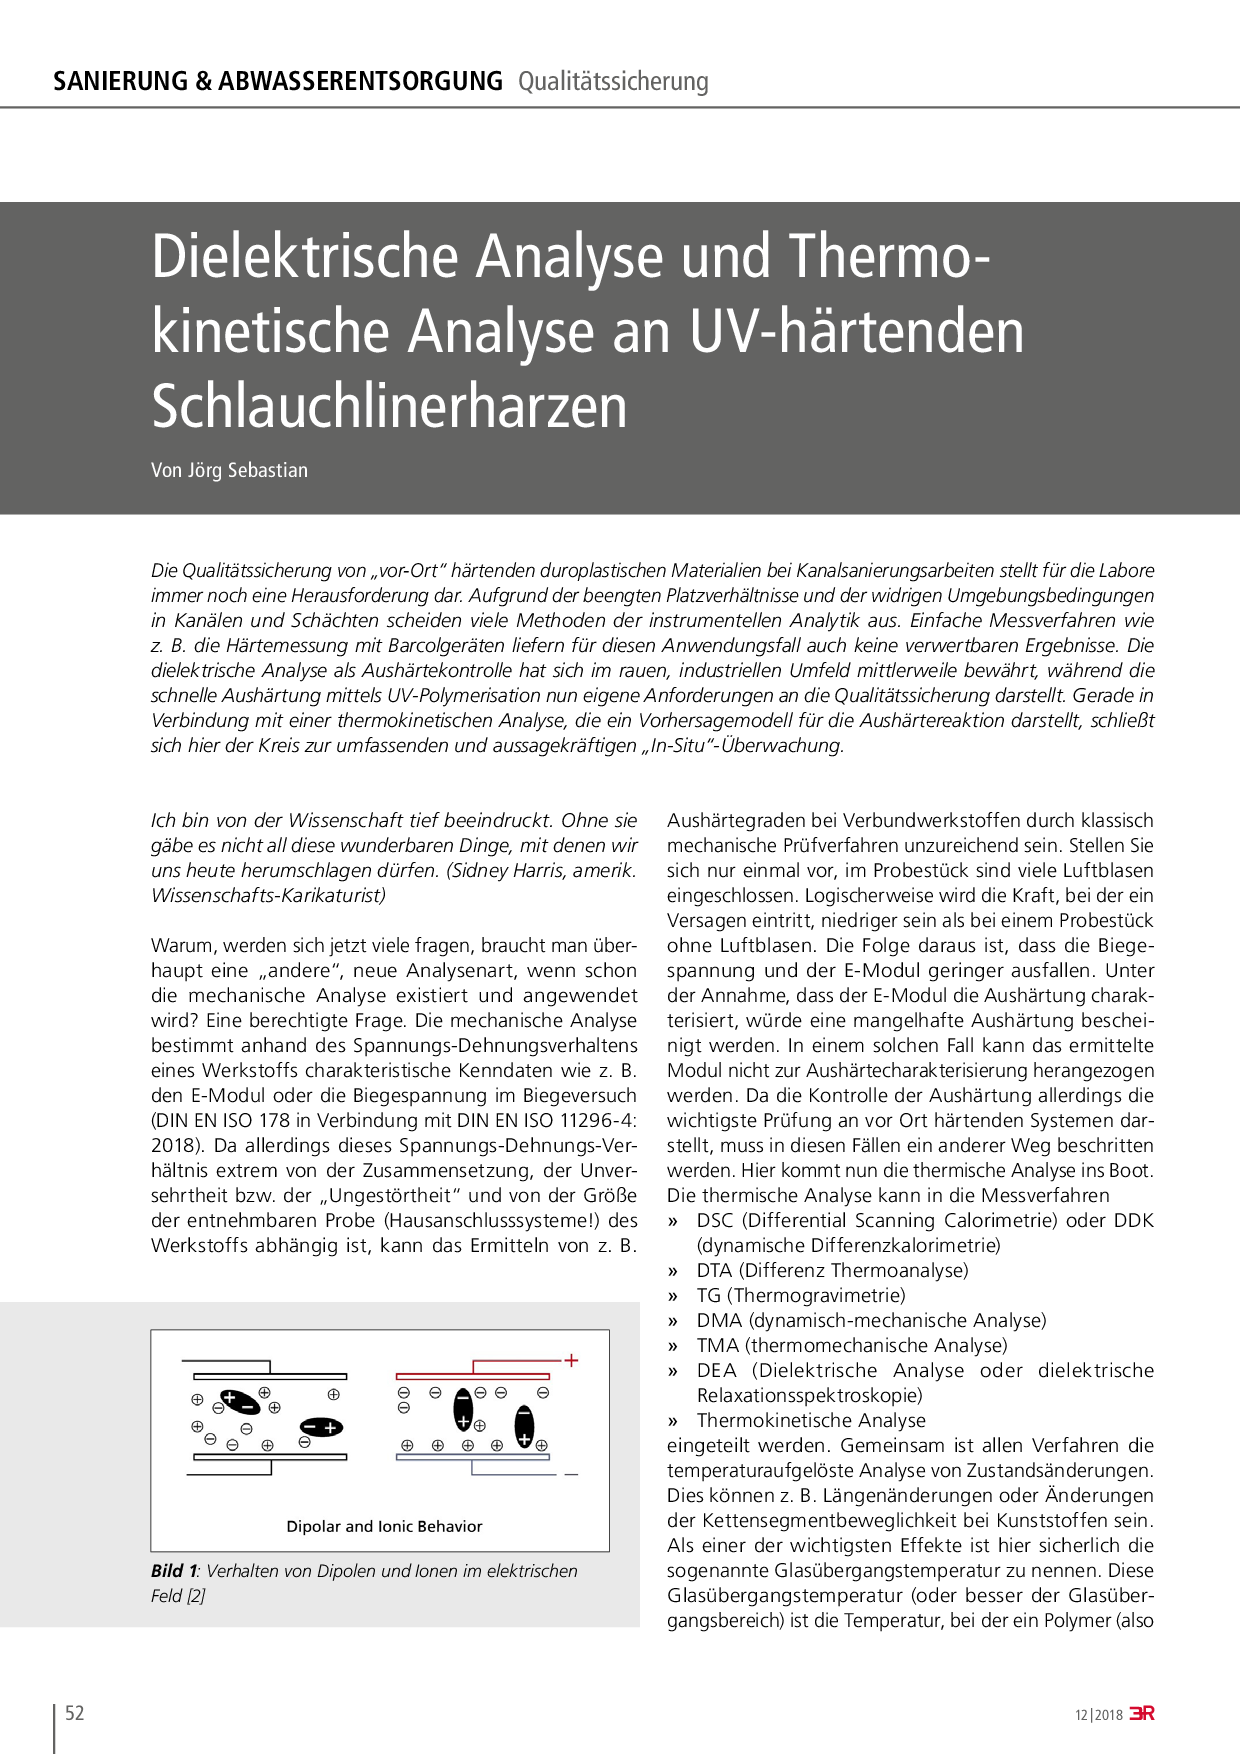 Dielektrische Analyse und Thermokinetische Analyse an UV-härtenden Schlauchlinerharzen